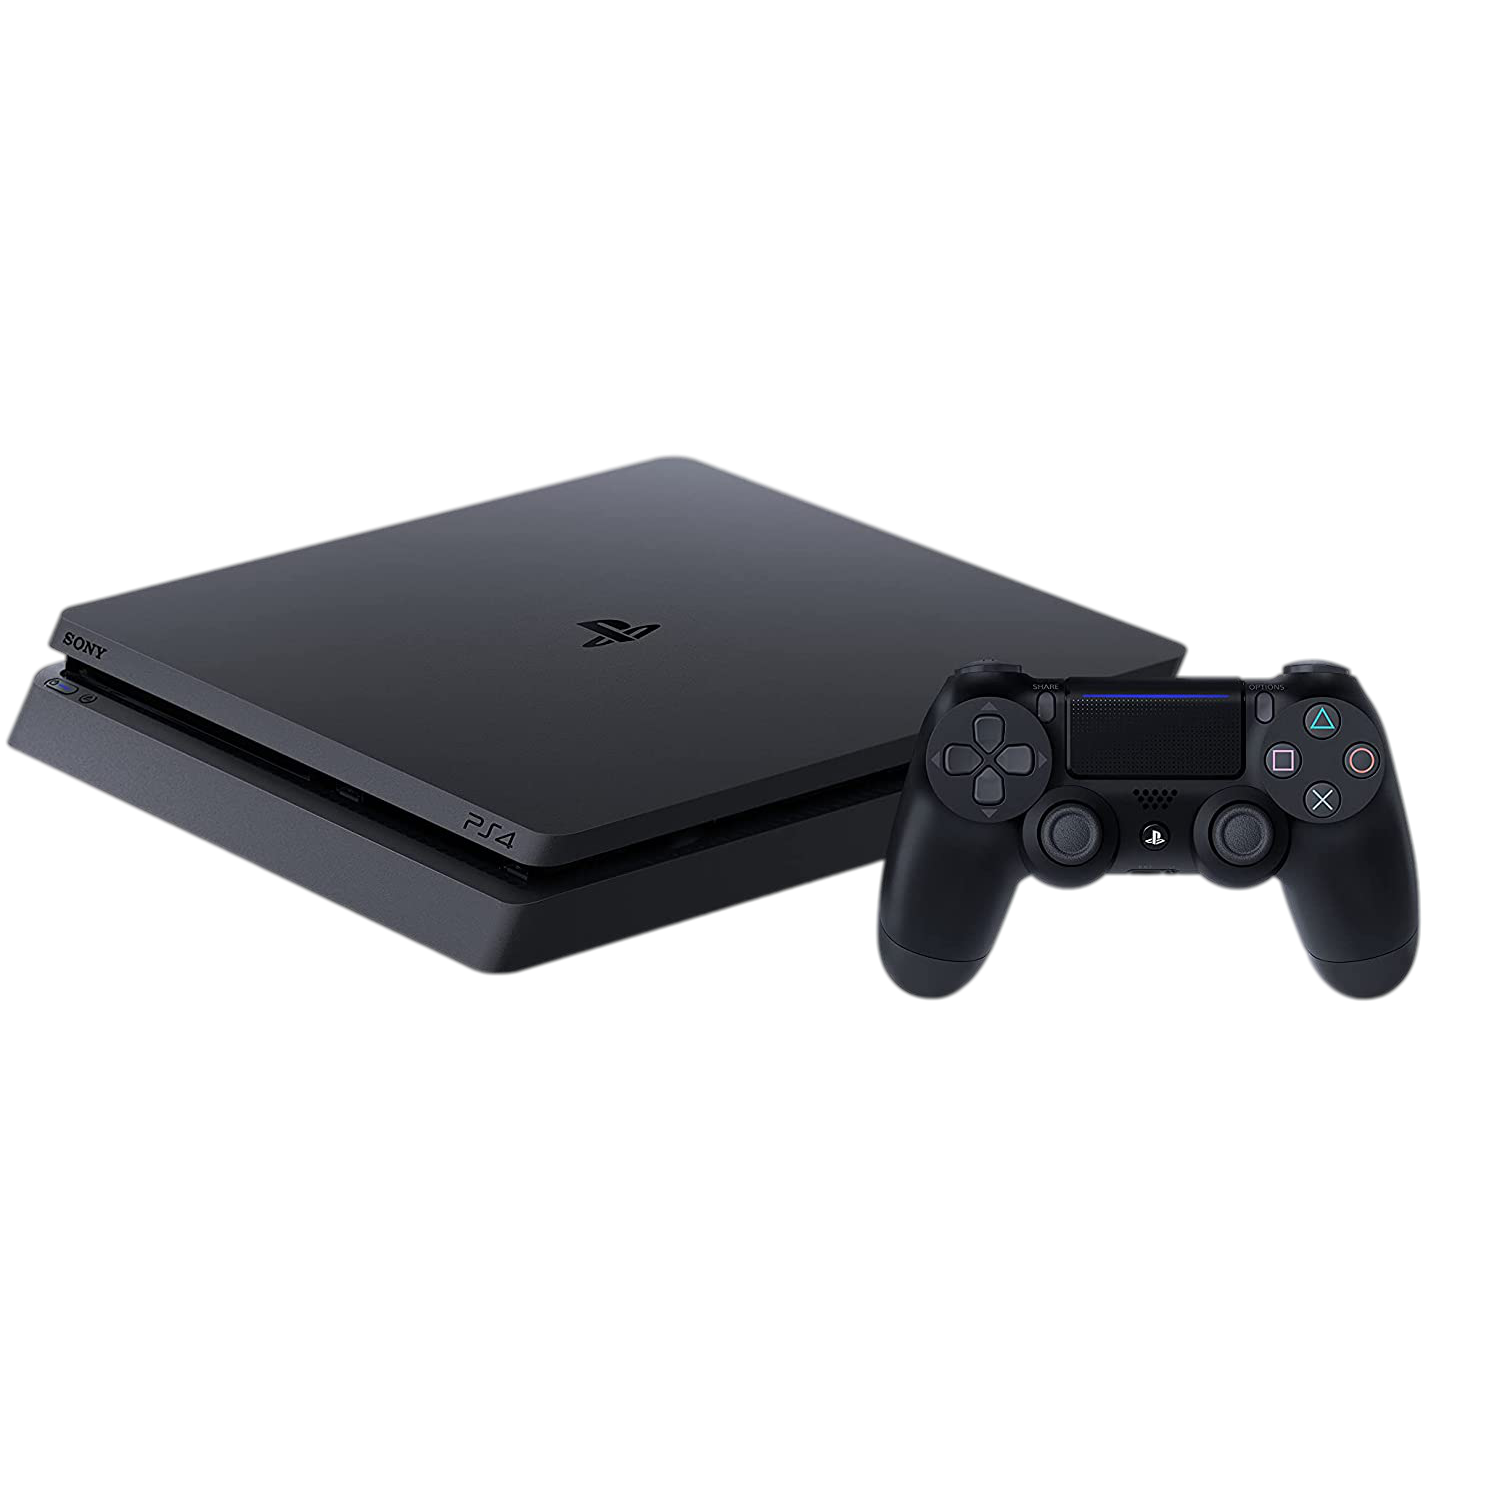 Sony-PlayStation-4-Slim-Console-500GB_6c42fb0b-e7f0-4465-88b0-660f23bc8769